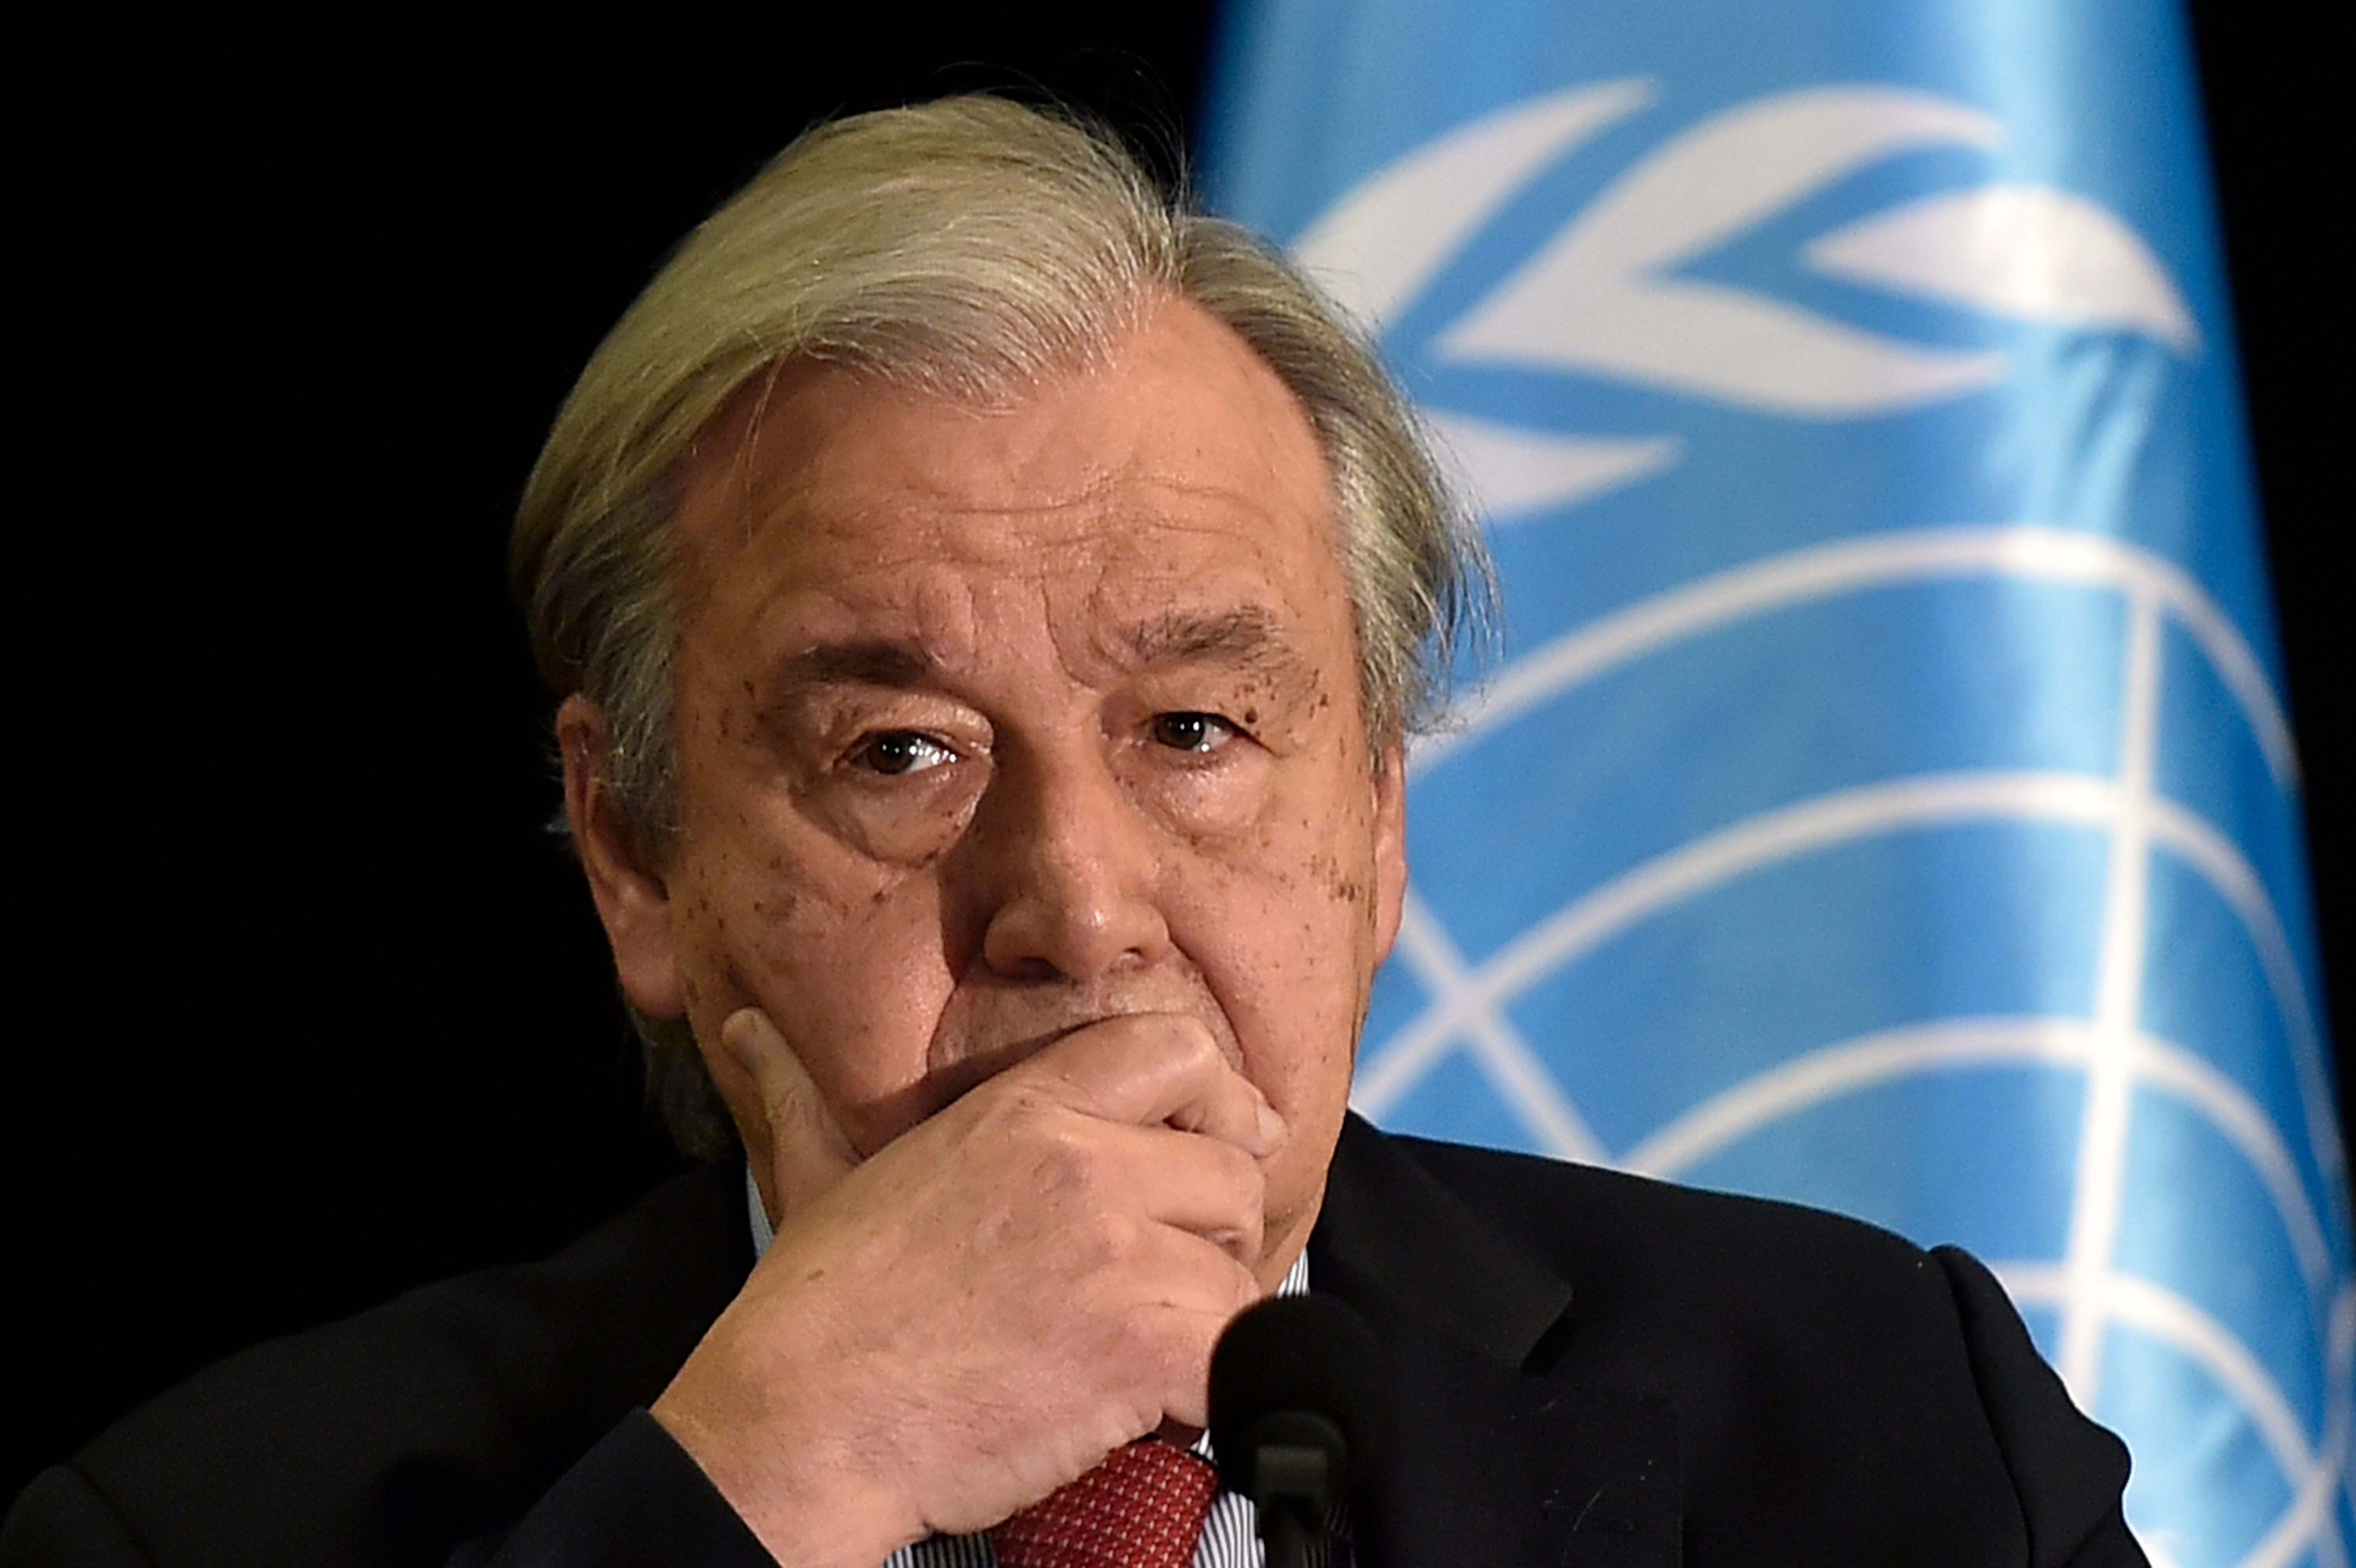 ONU: El mundo se dirige hacia una “guerra más amplia”